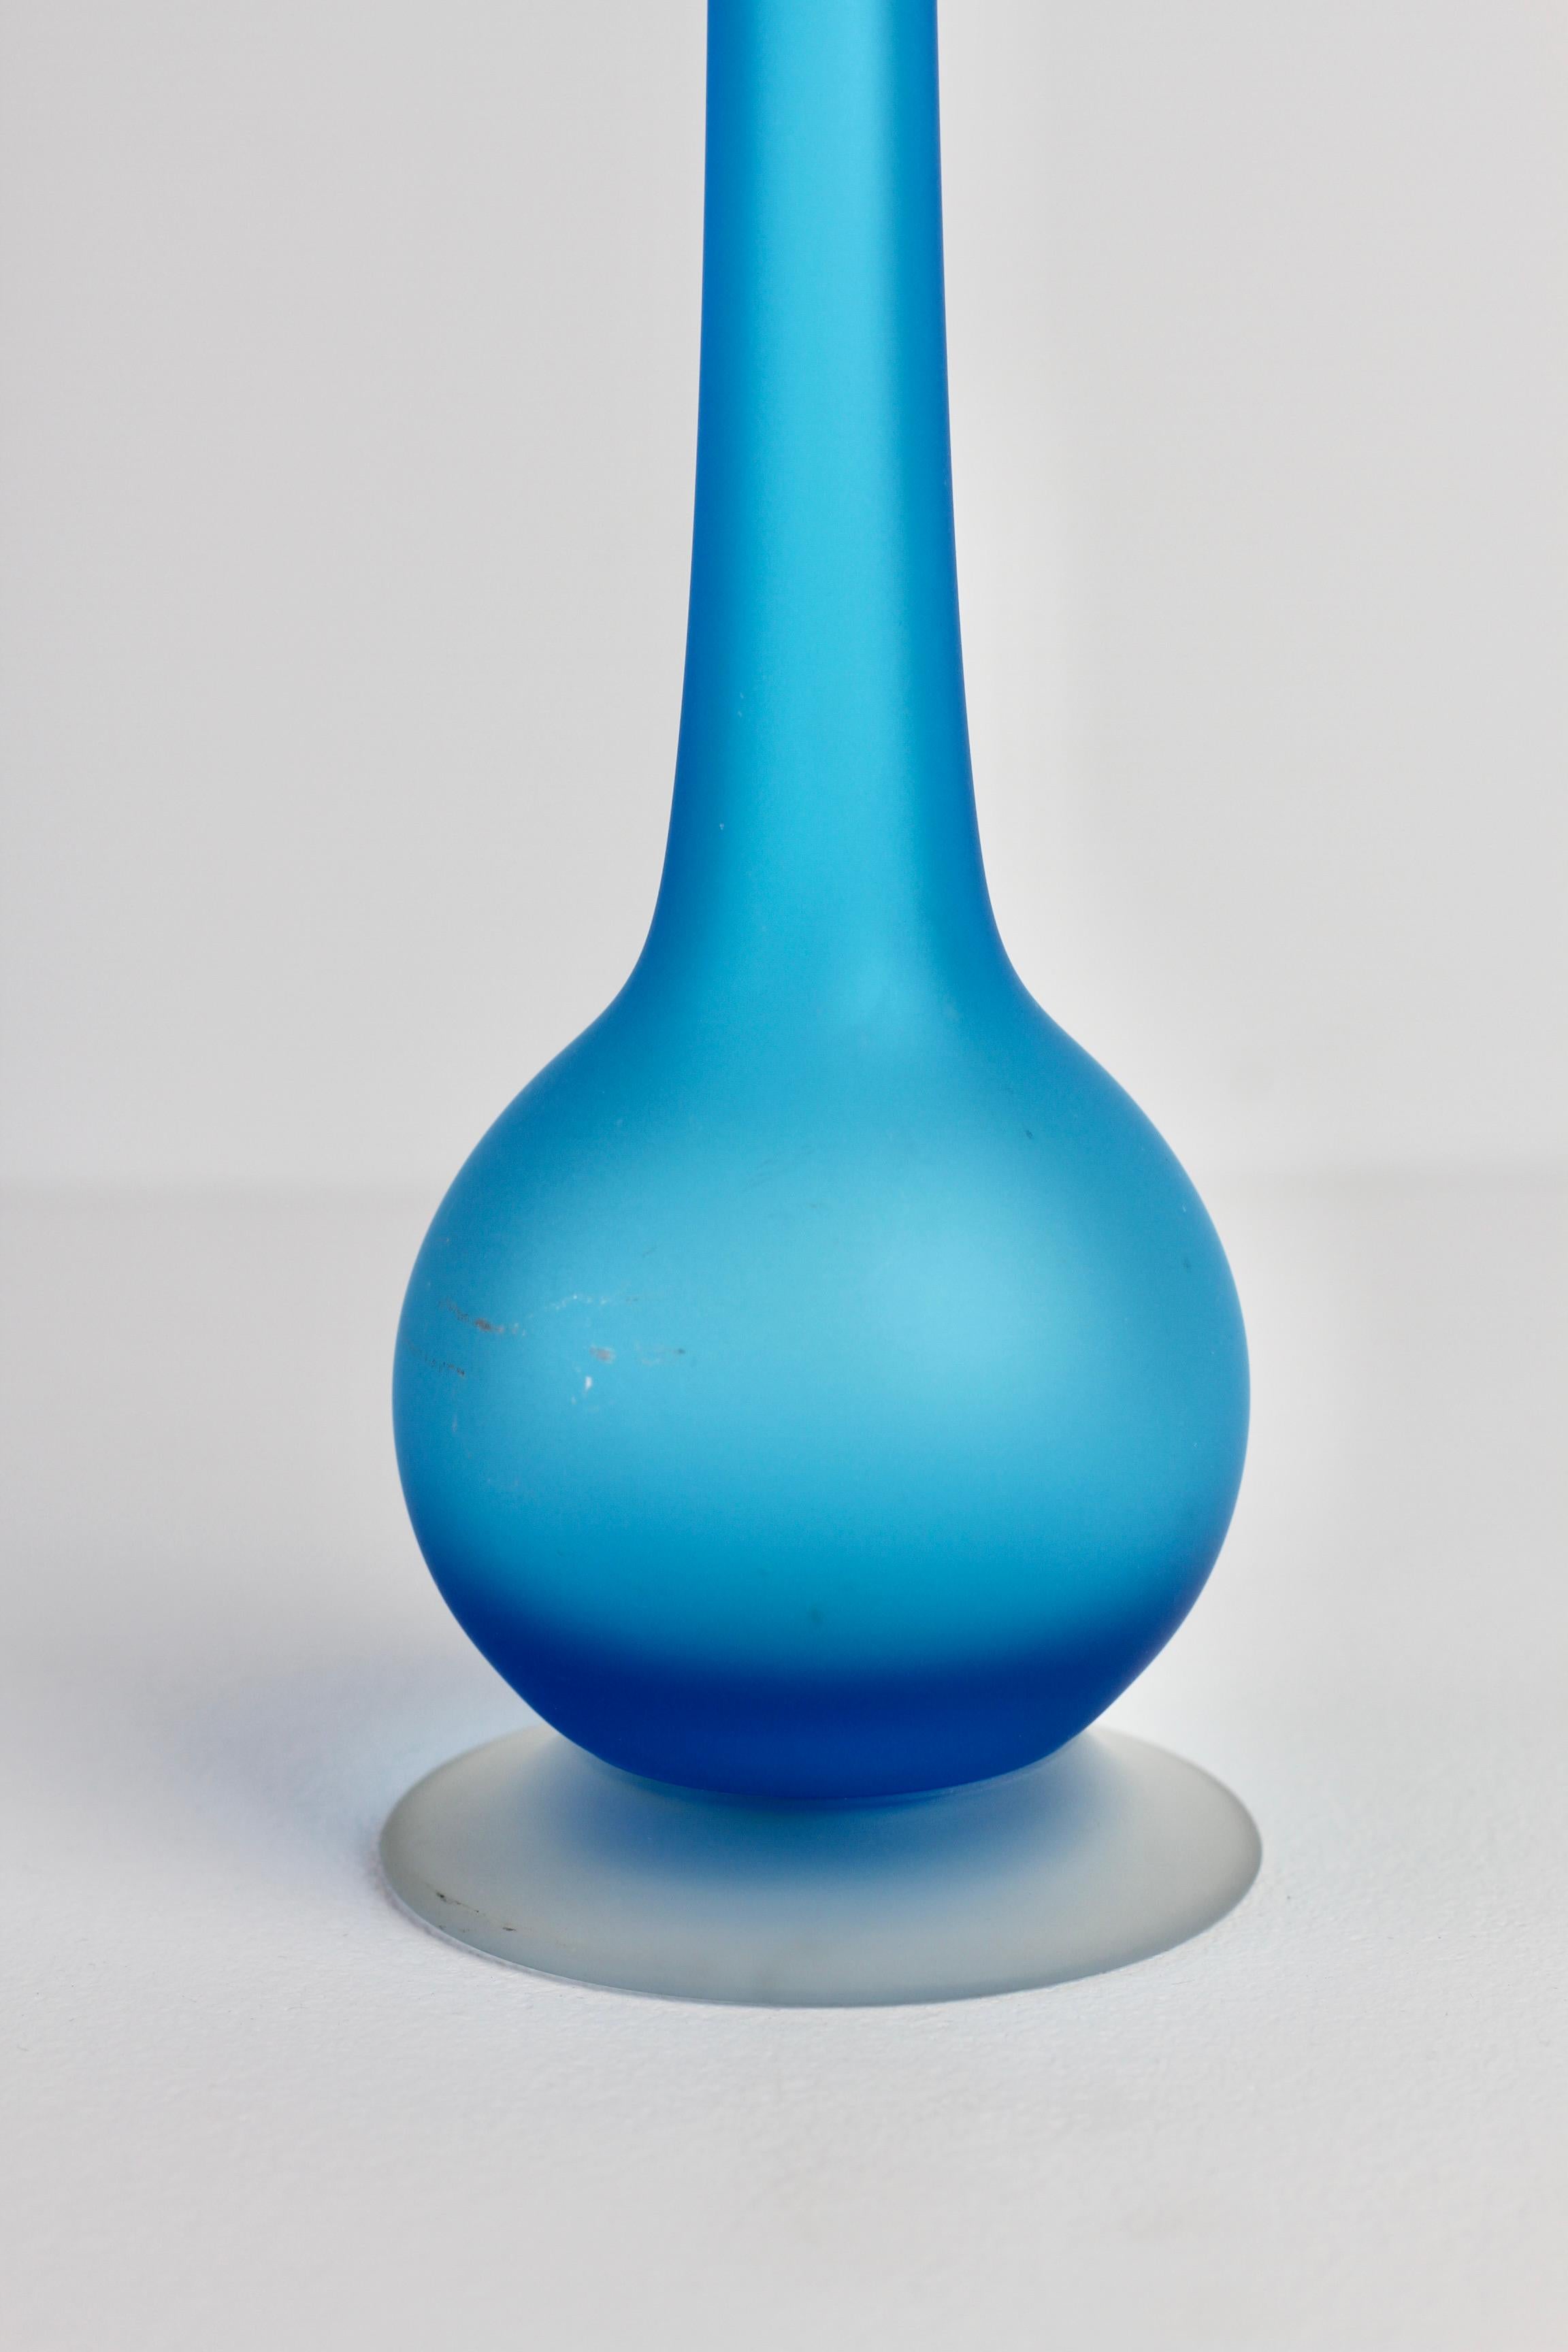 Rare Colorful Blue Carlo Moretti Satinato Murano Glass Pencil Vase For Sale 1